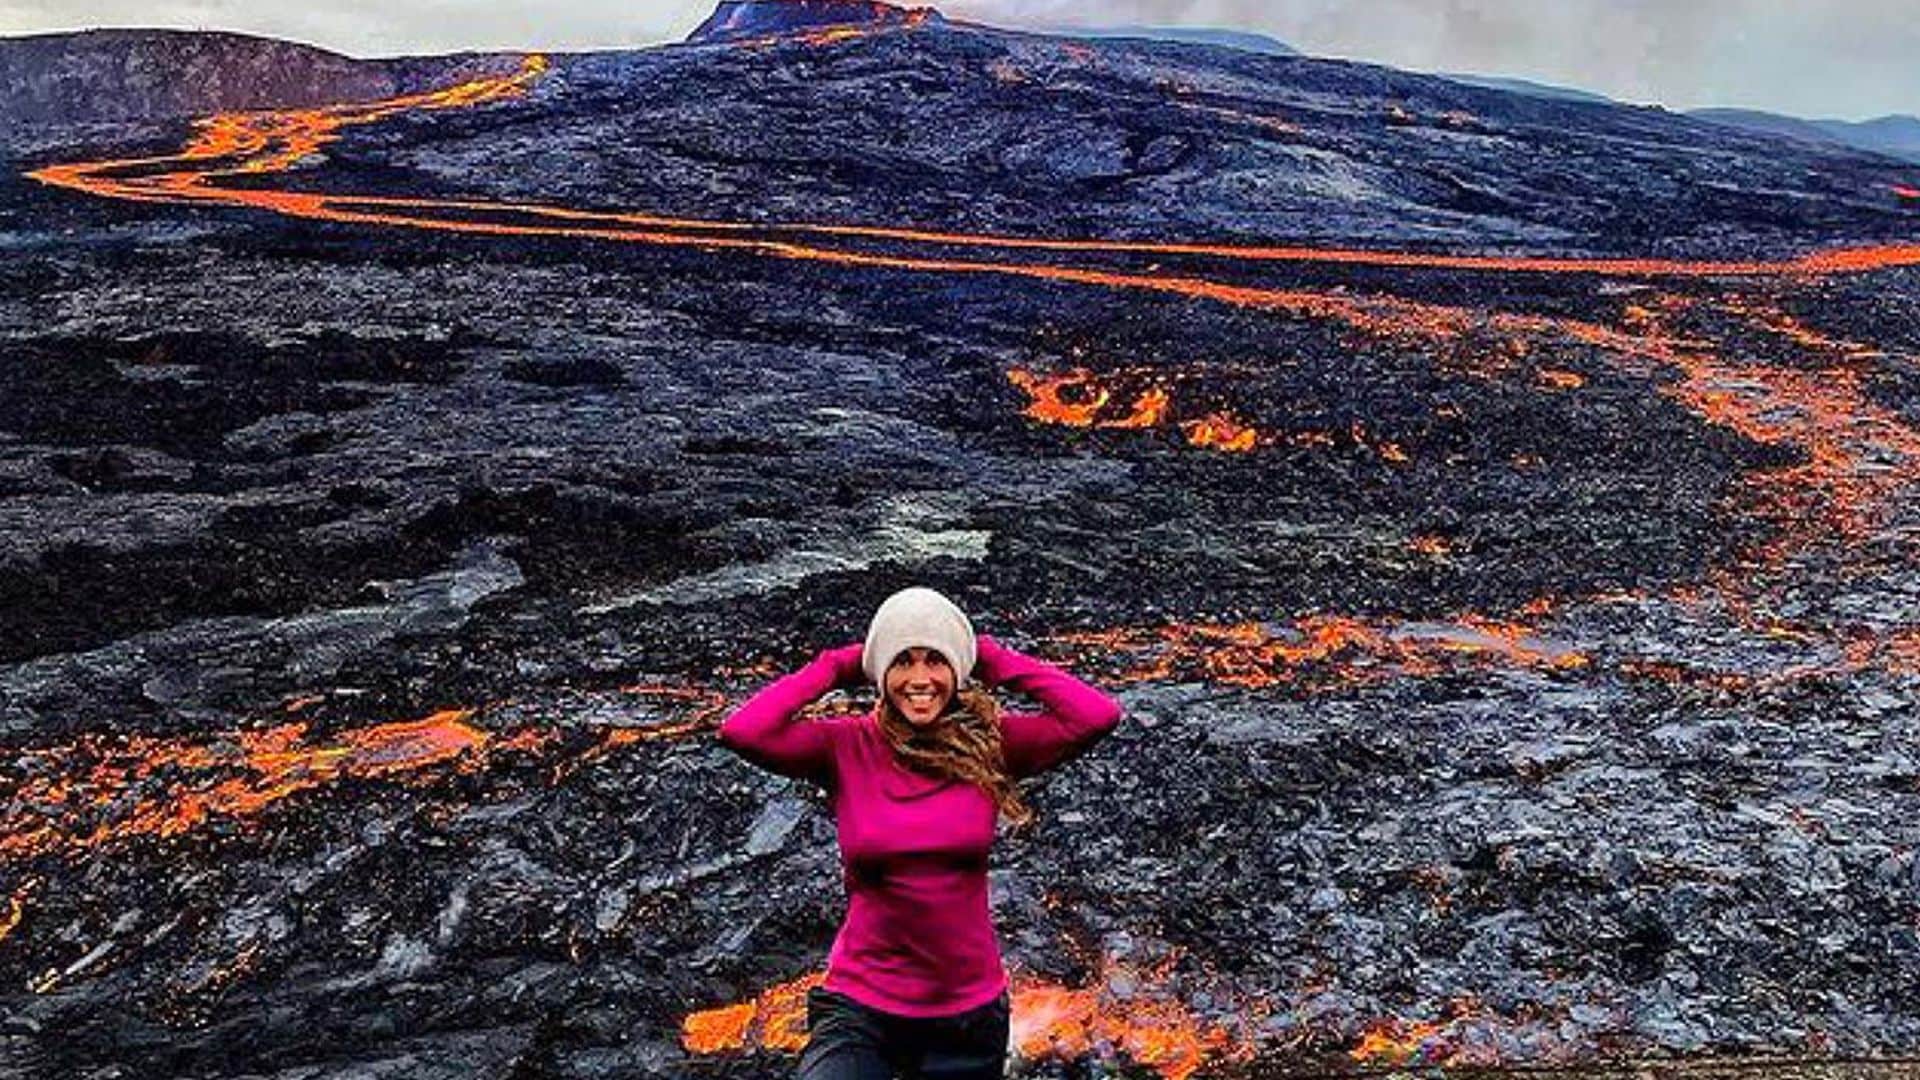 Las impresionantes imágenes de Lara Álvarez en Islandia con un volcán en plena erupción